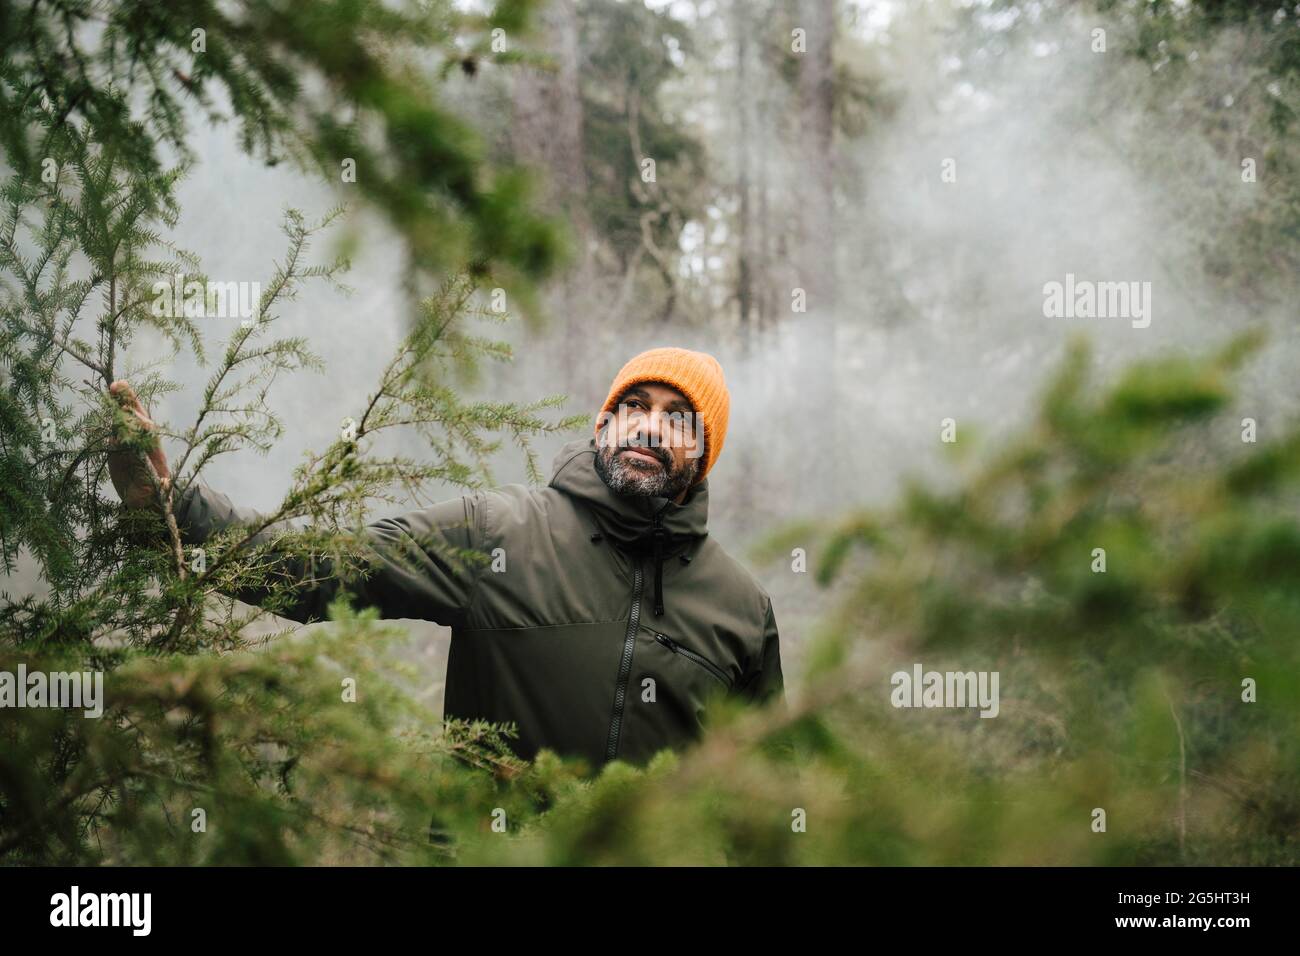 Randonneur mâle explorant au milieu des plantes de la forêt pendant les vacances Banque D'Images